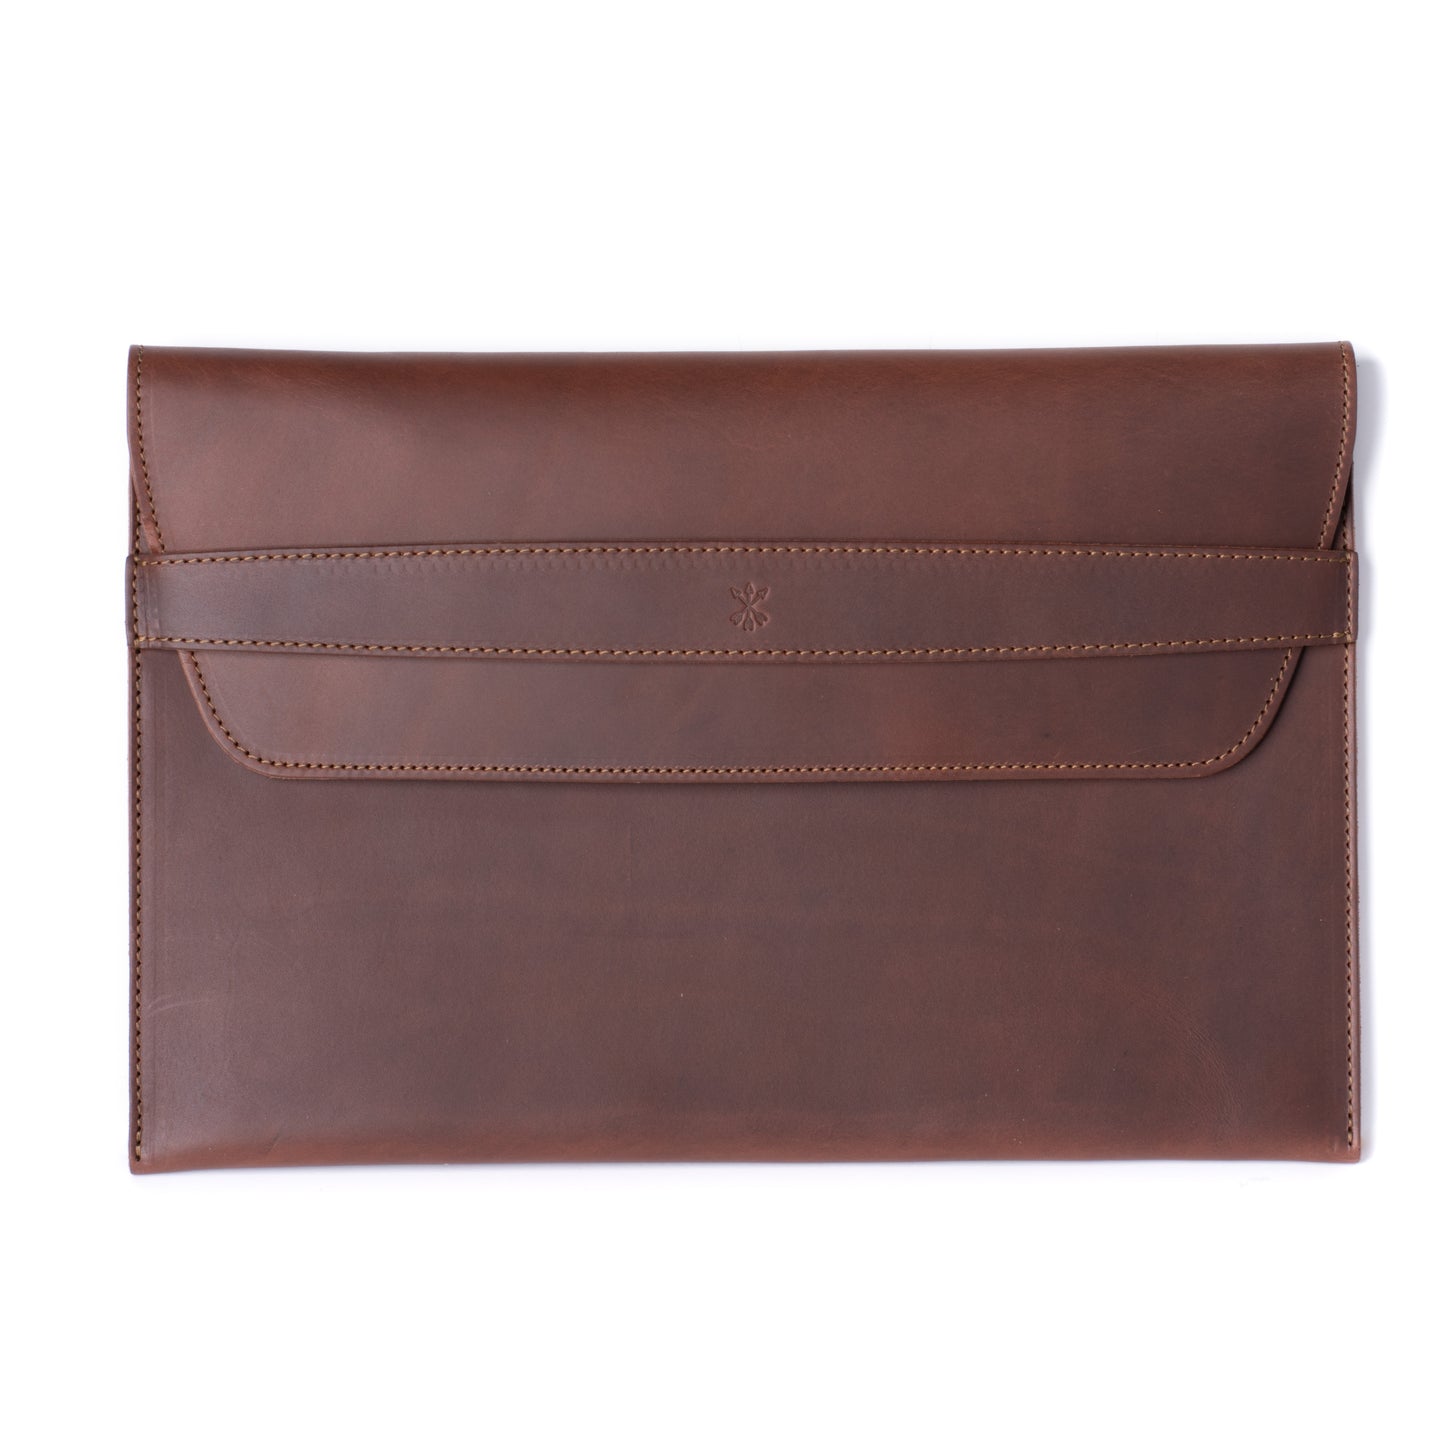 Leather iPad Pro Envelope Case - Chestnut